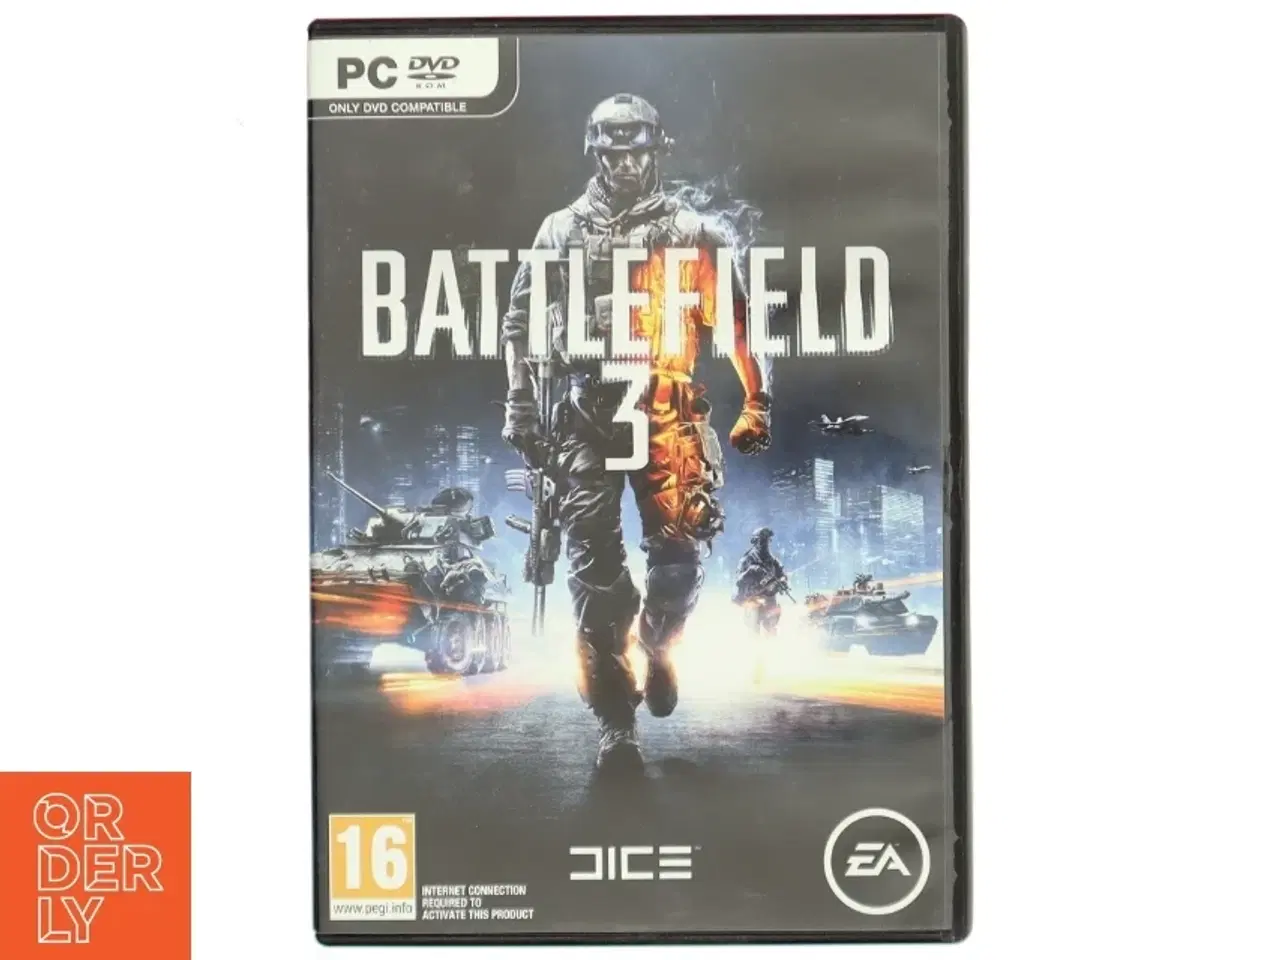 Billede 1 - Battlefield 3 - PC Spil fra EA